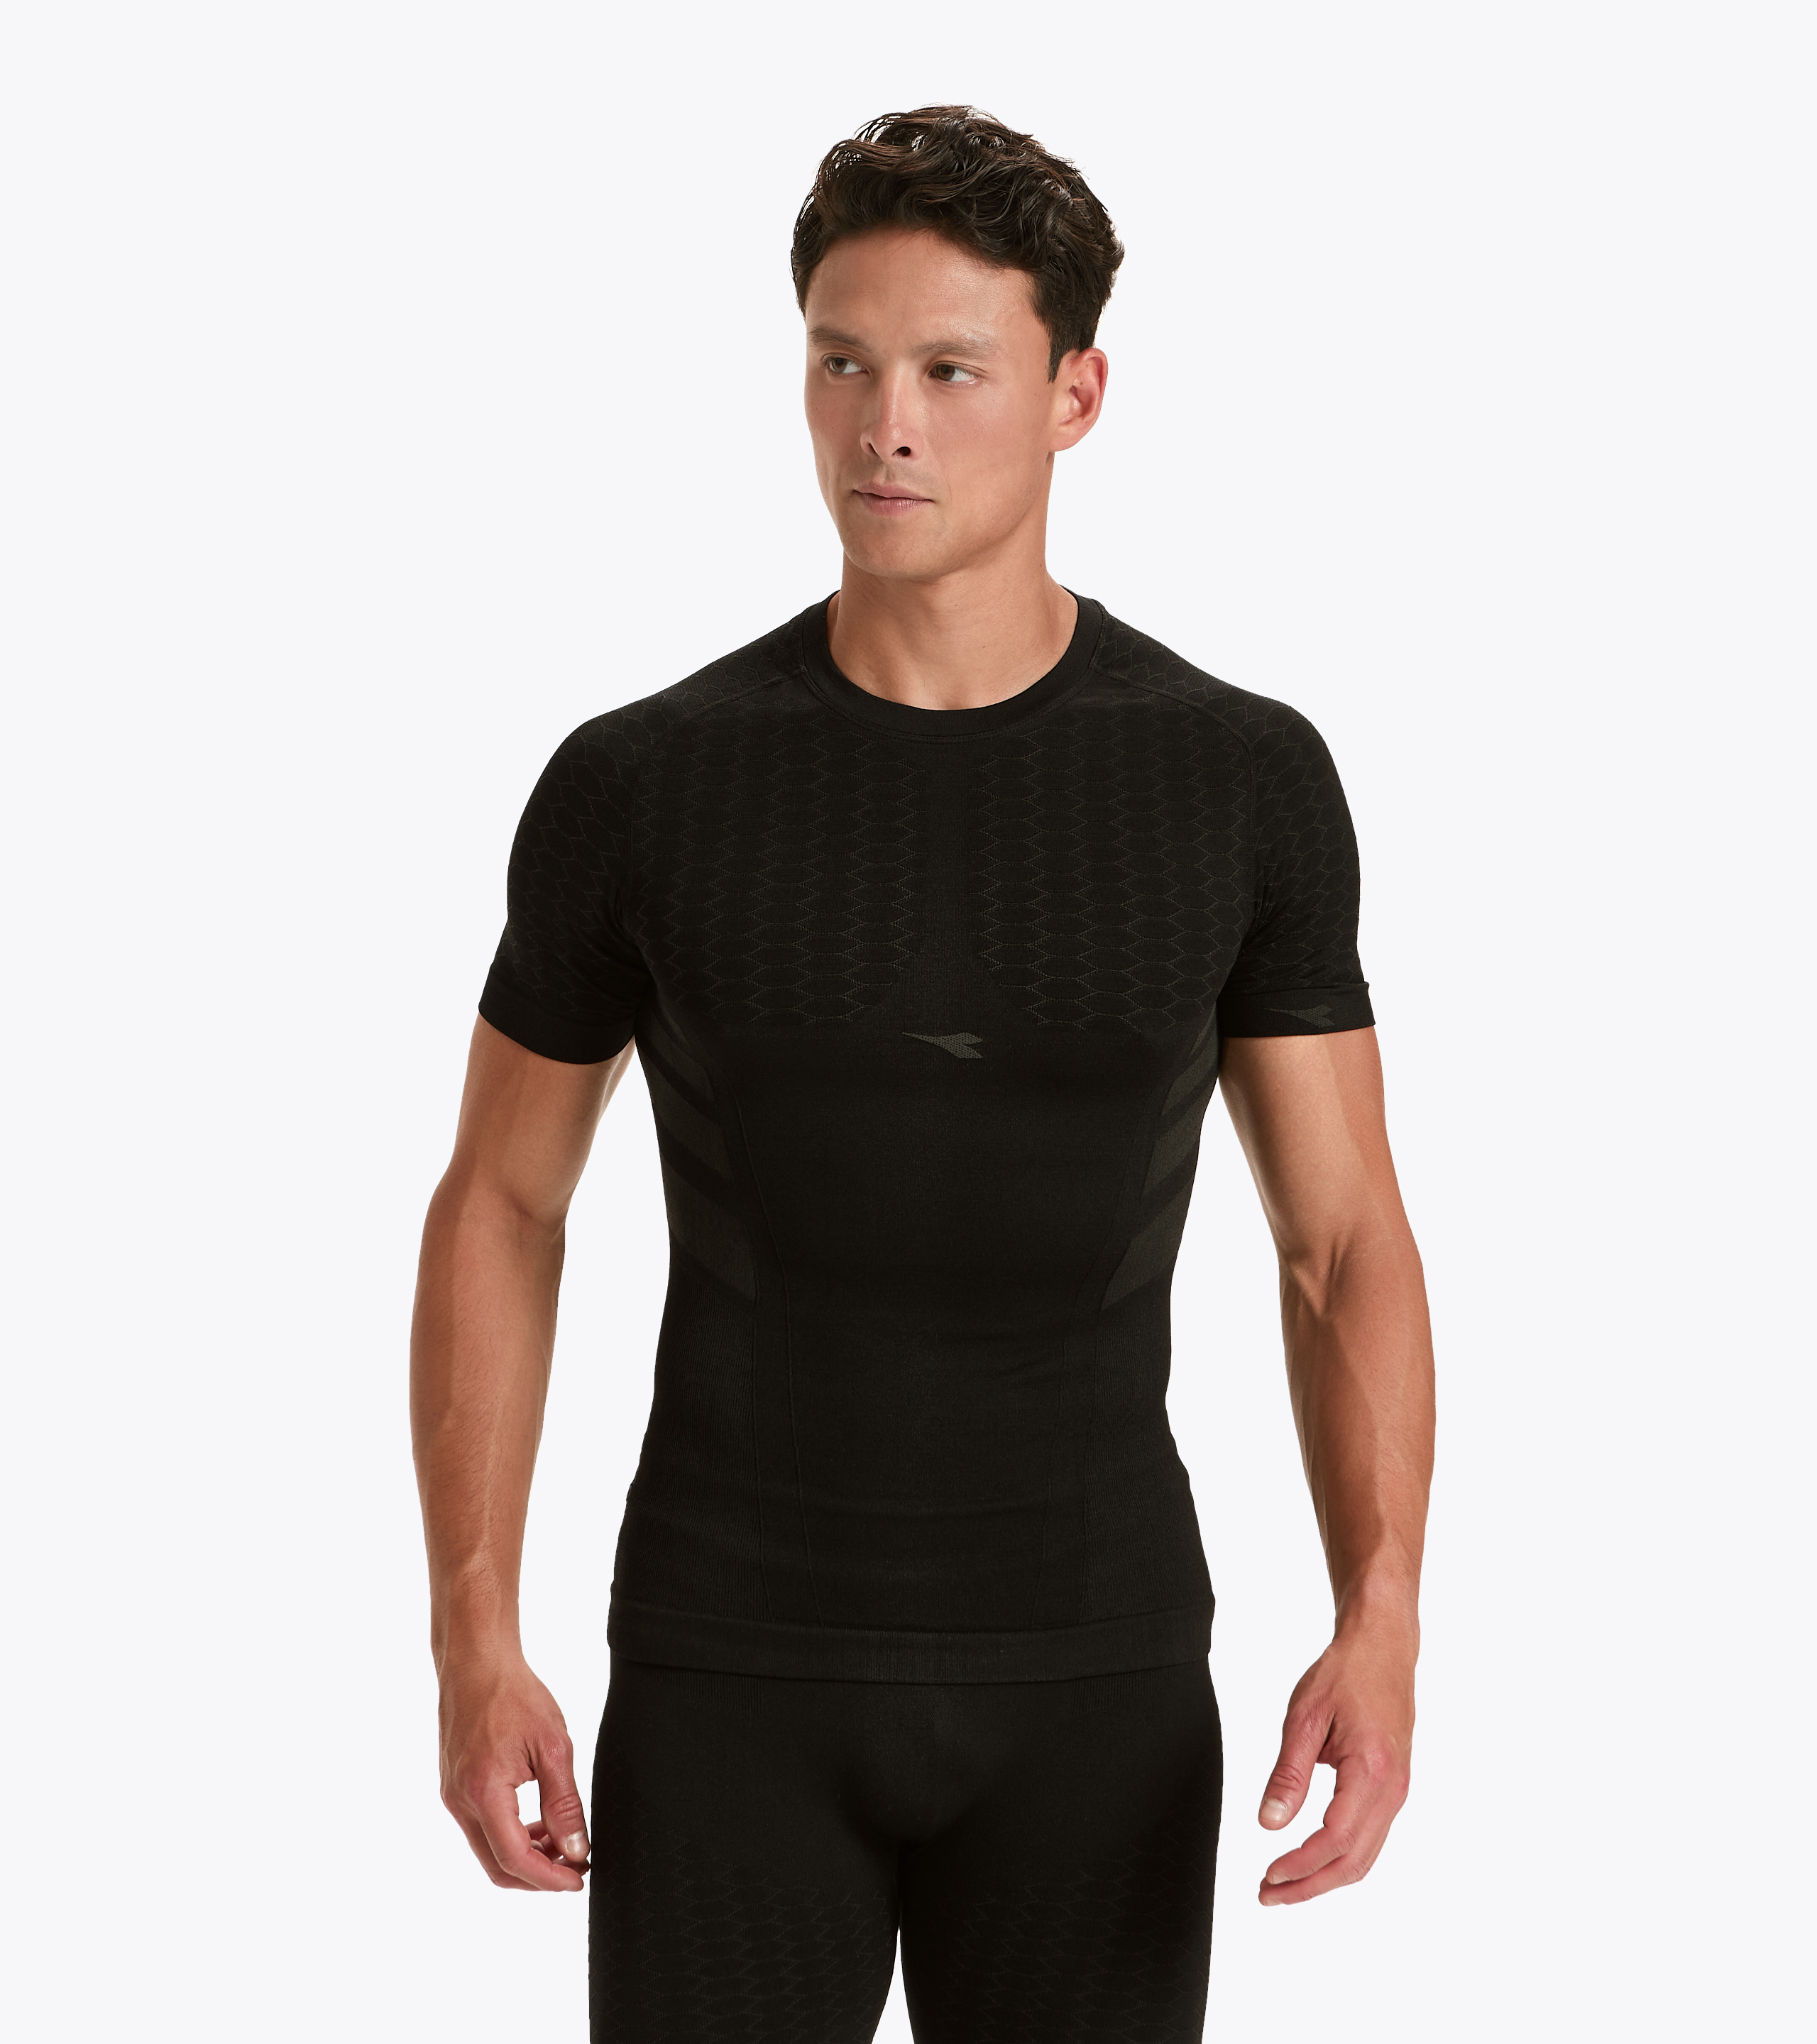 SS T-SHIRT ACT Short-sleeved training t-shirt - Men - Diadora Online Store  CA